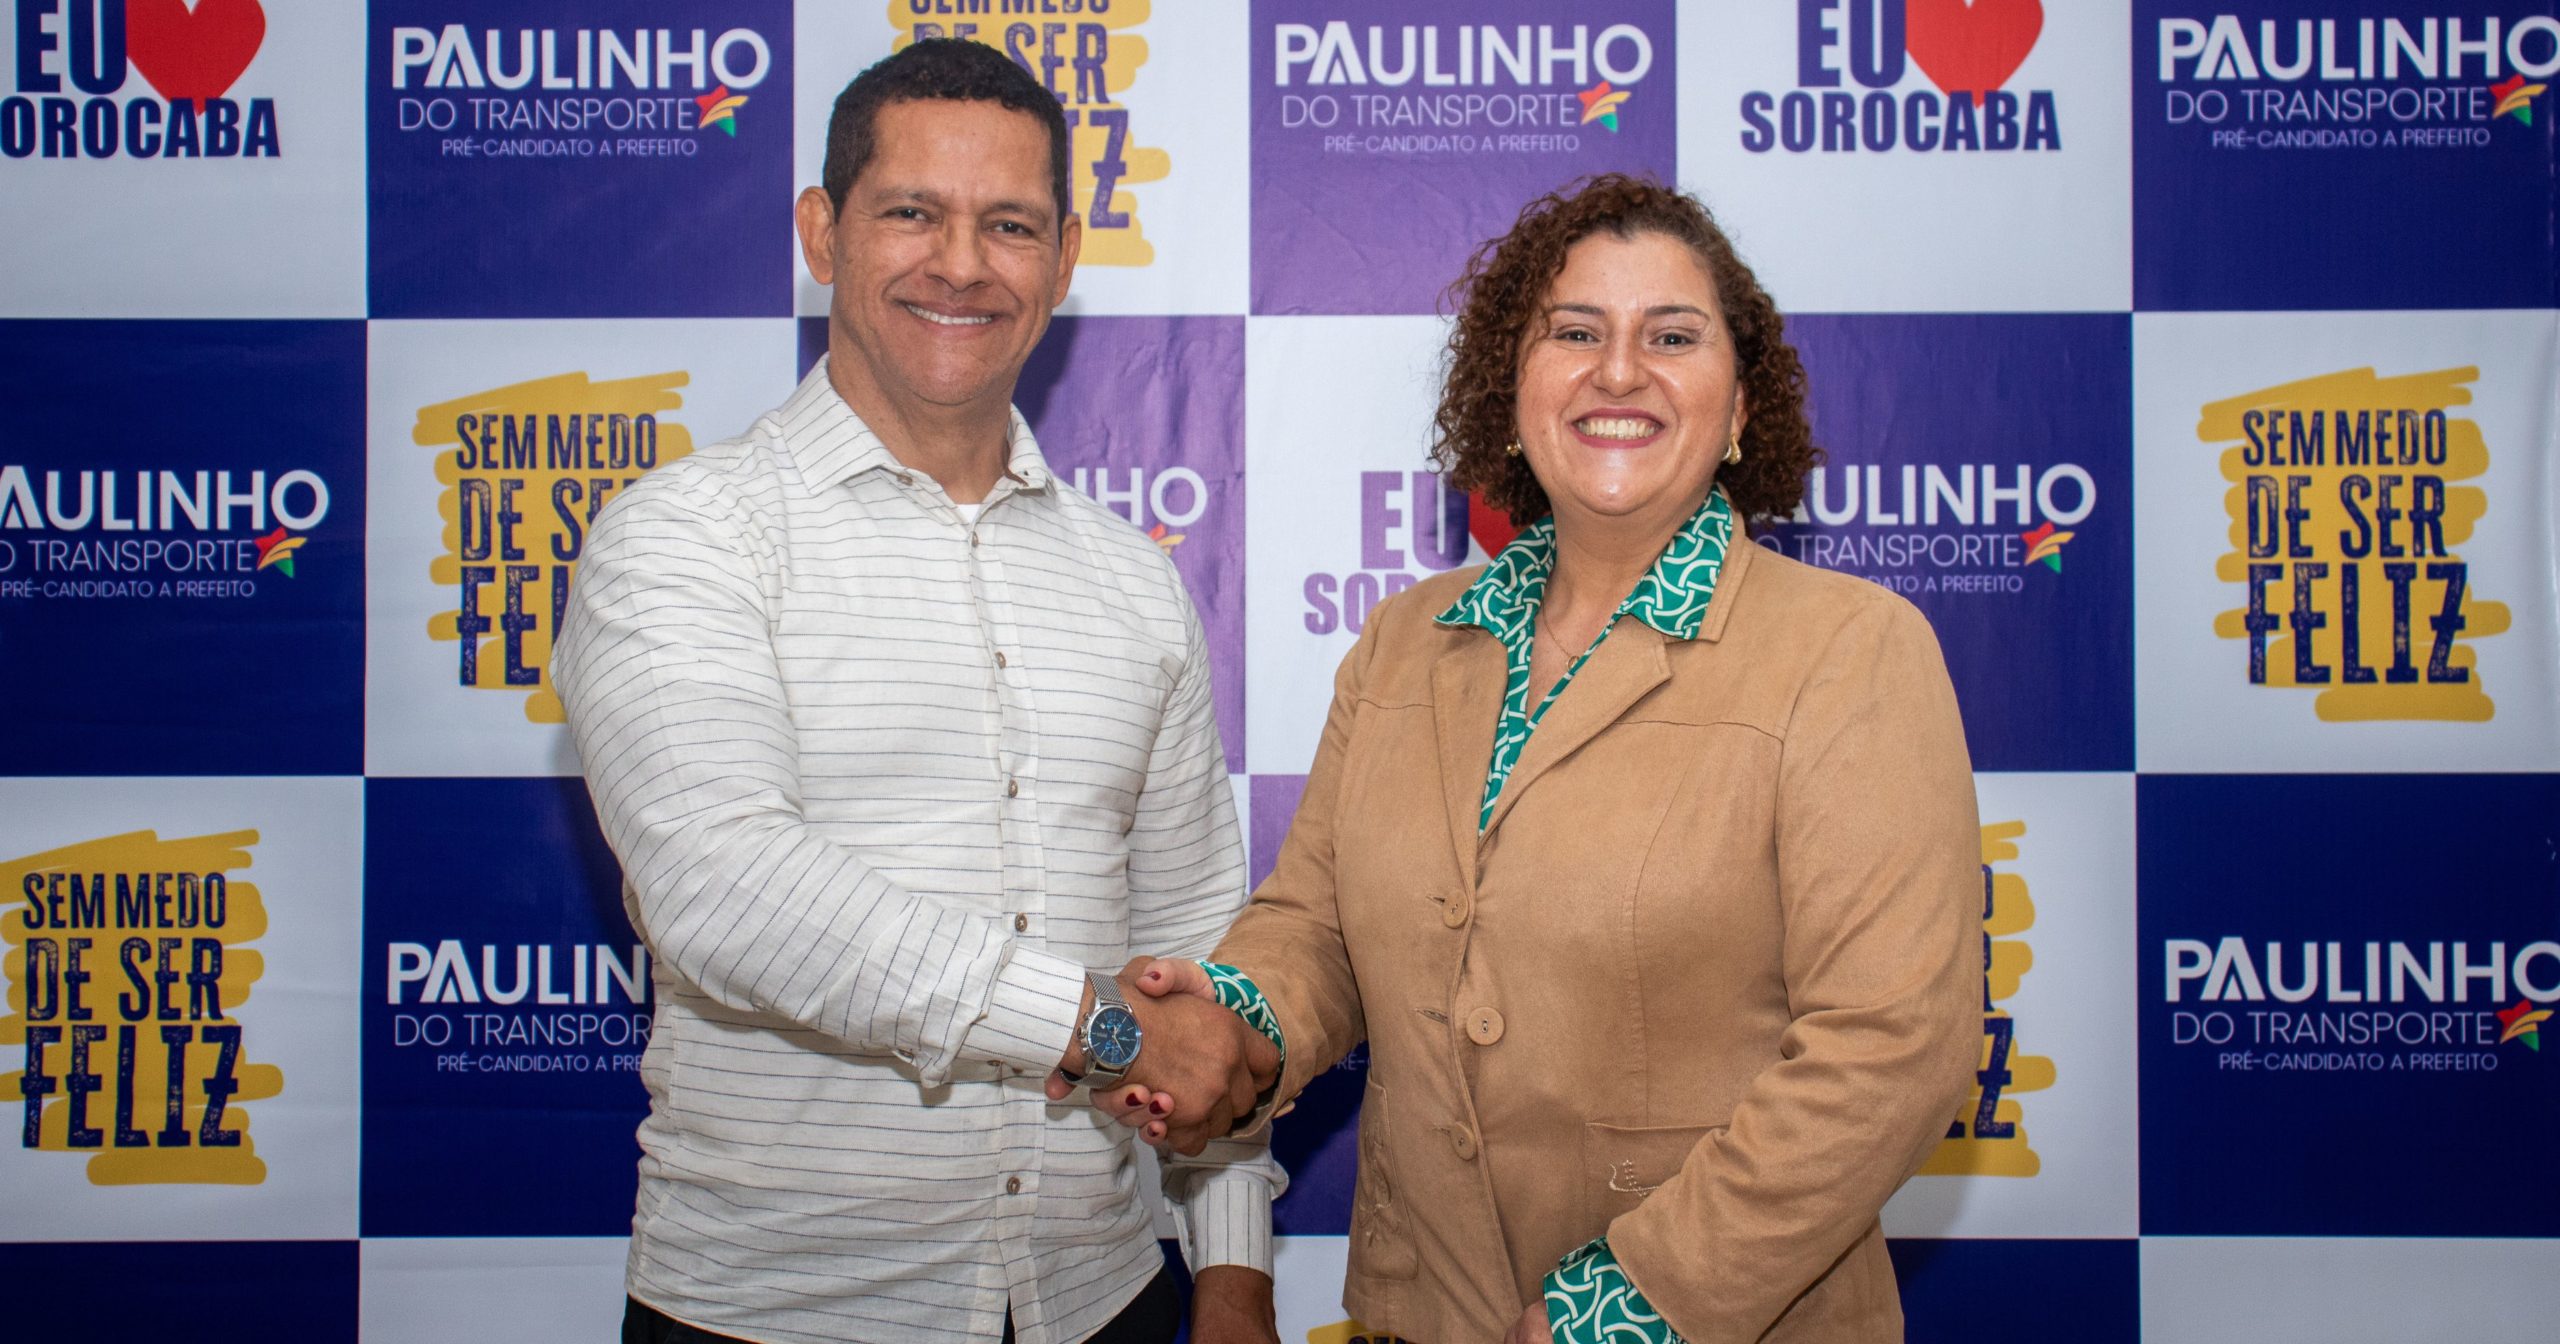 Magda Souza é indicada pré-candidata a vice-prefeita na chapa de Paulinho do Transporte